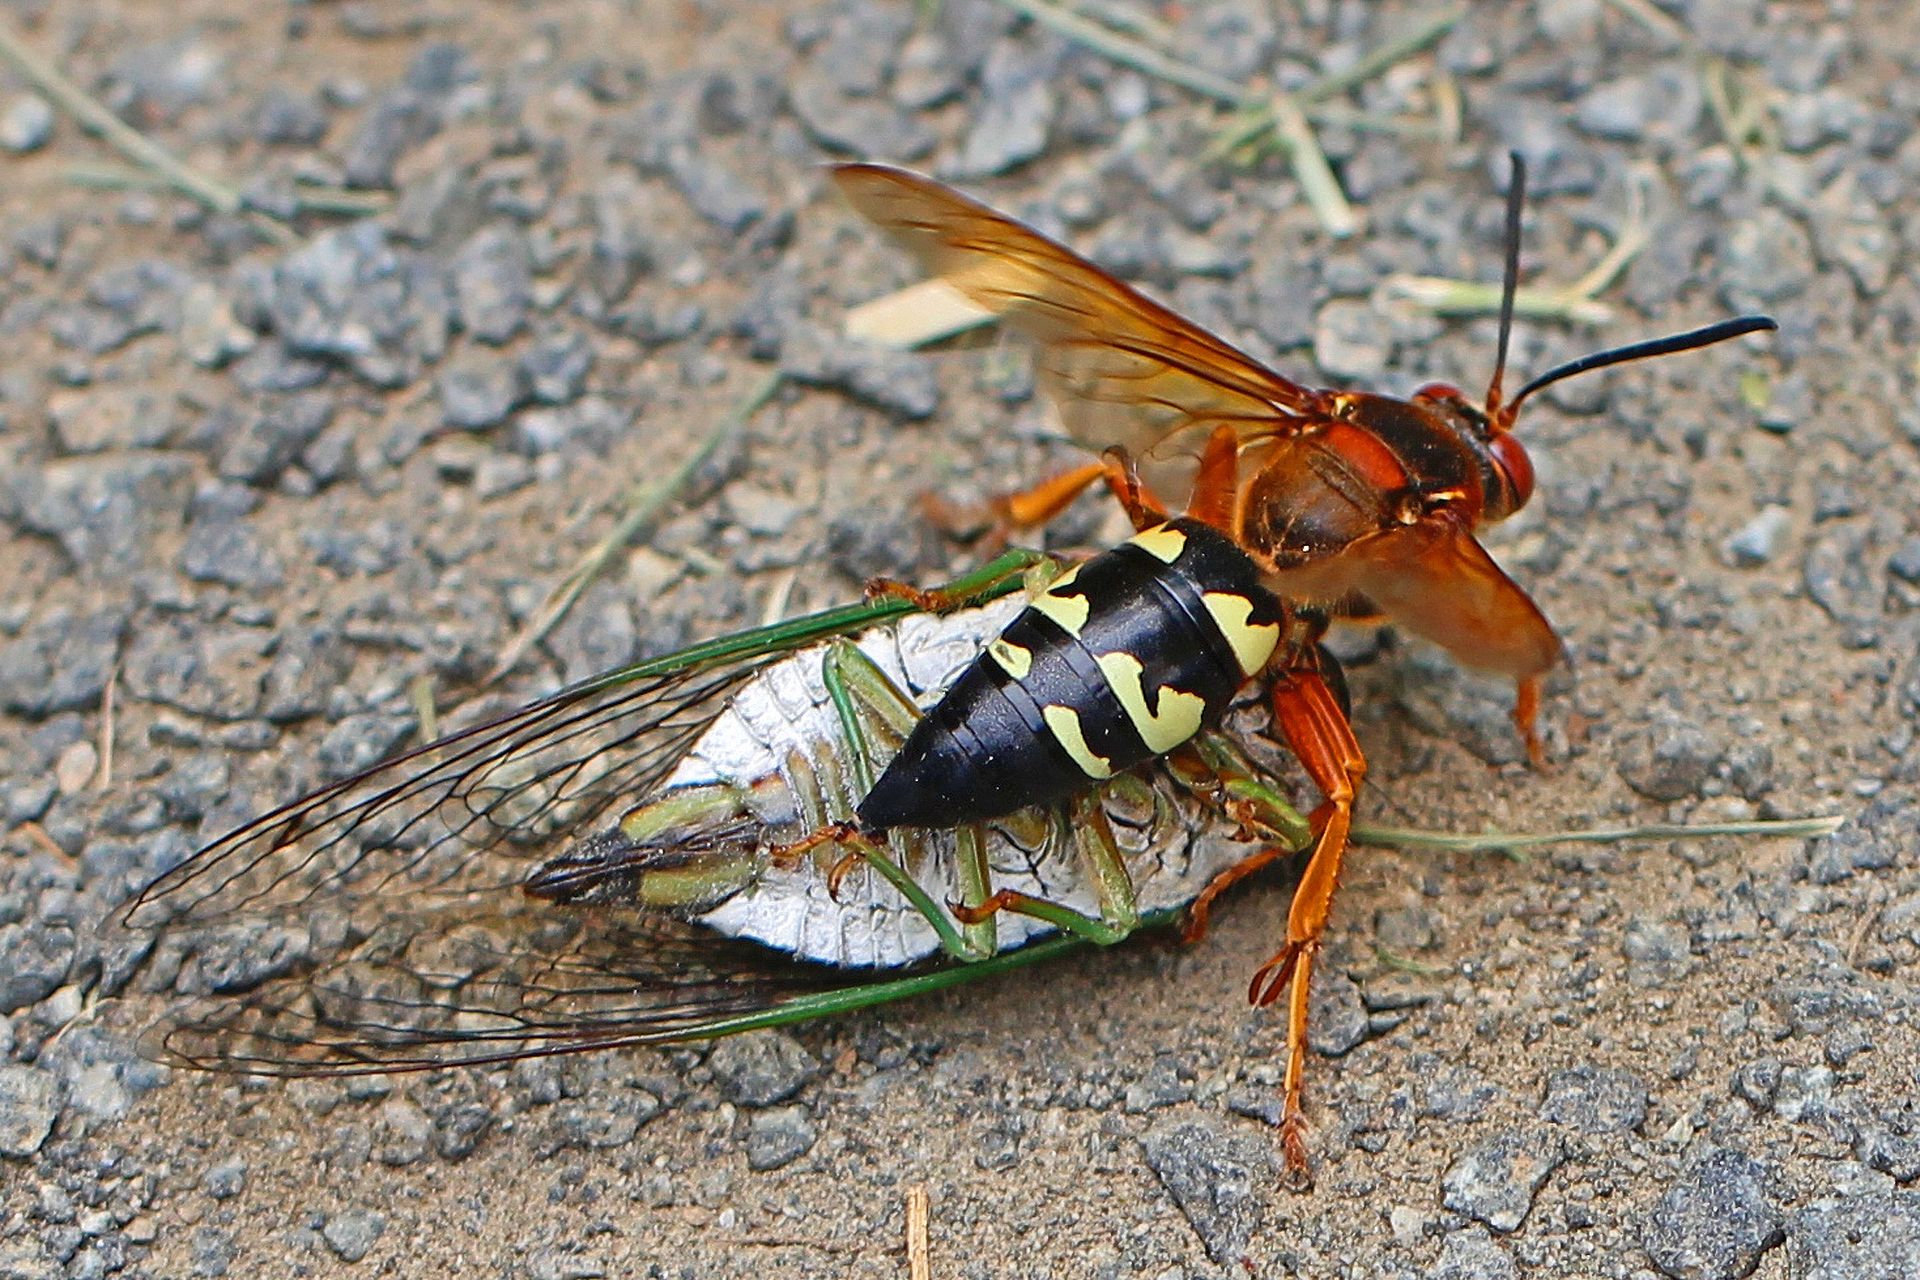 cicada killer wasps